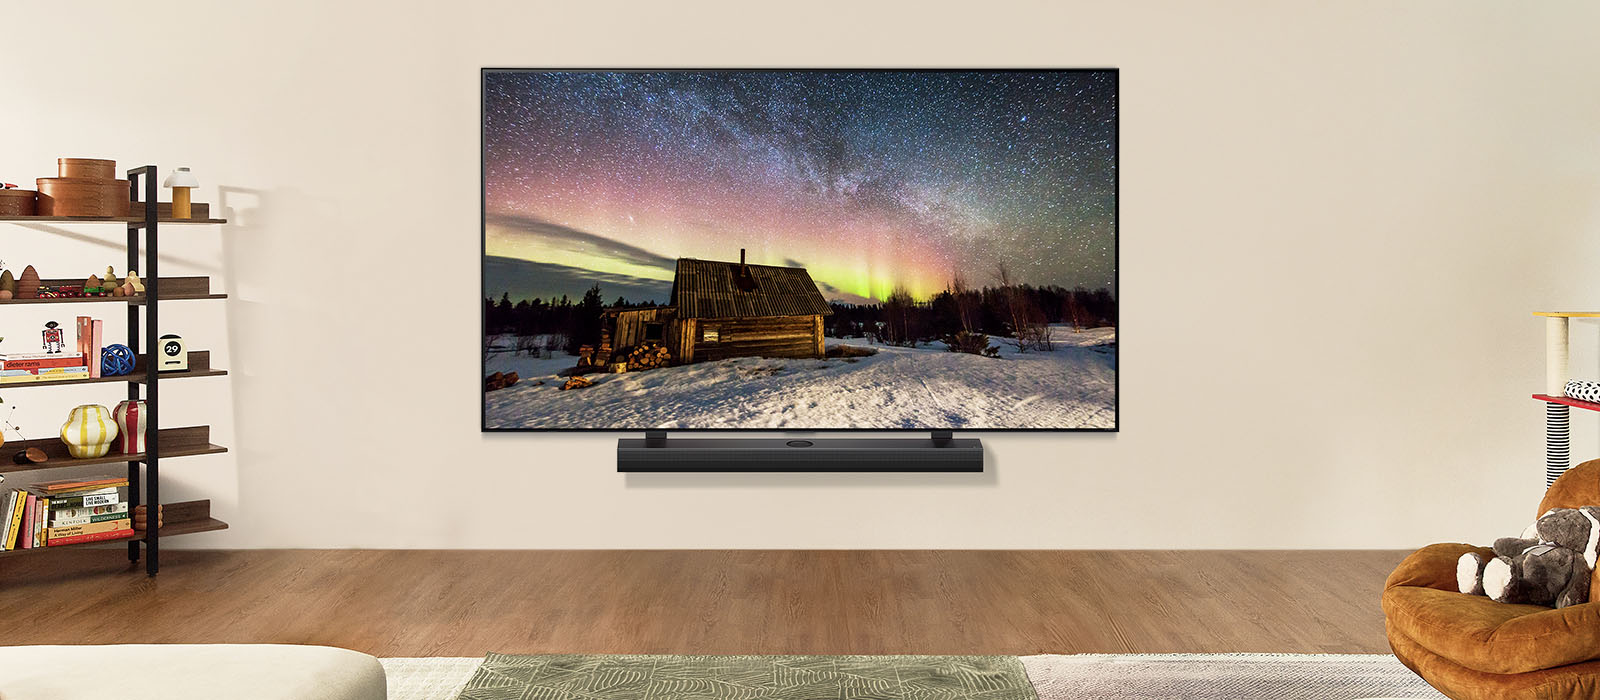 LG TV og LG Soundbar i en moderne stue om dagen. Skærmbilledet af nordlyset vises med ideelle lysniveauer.